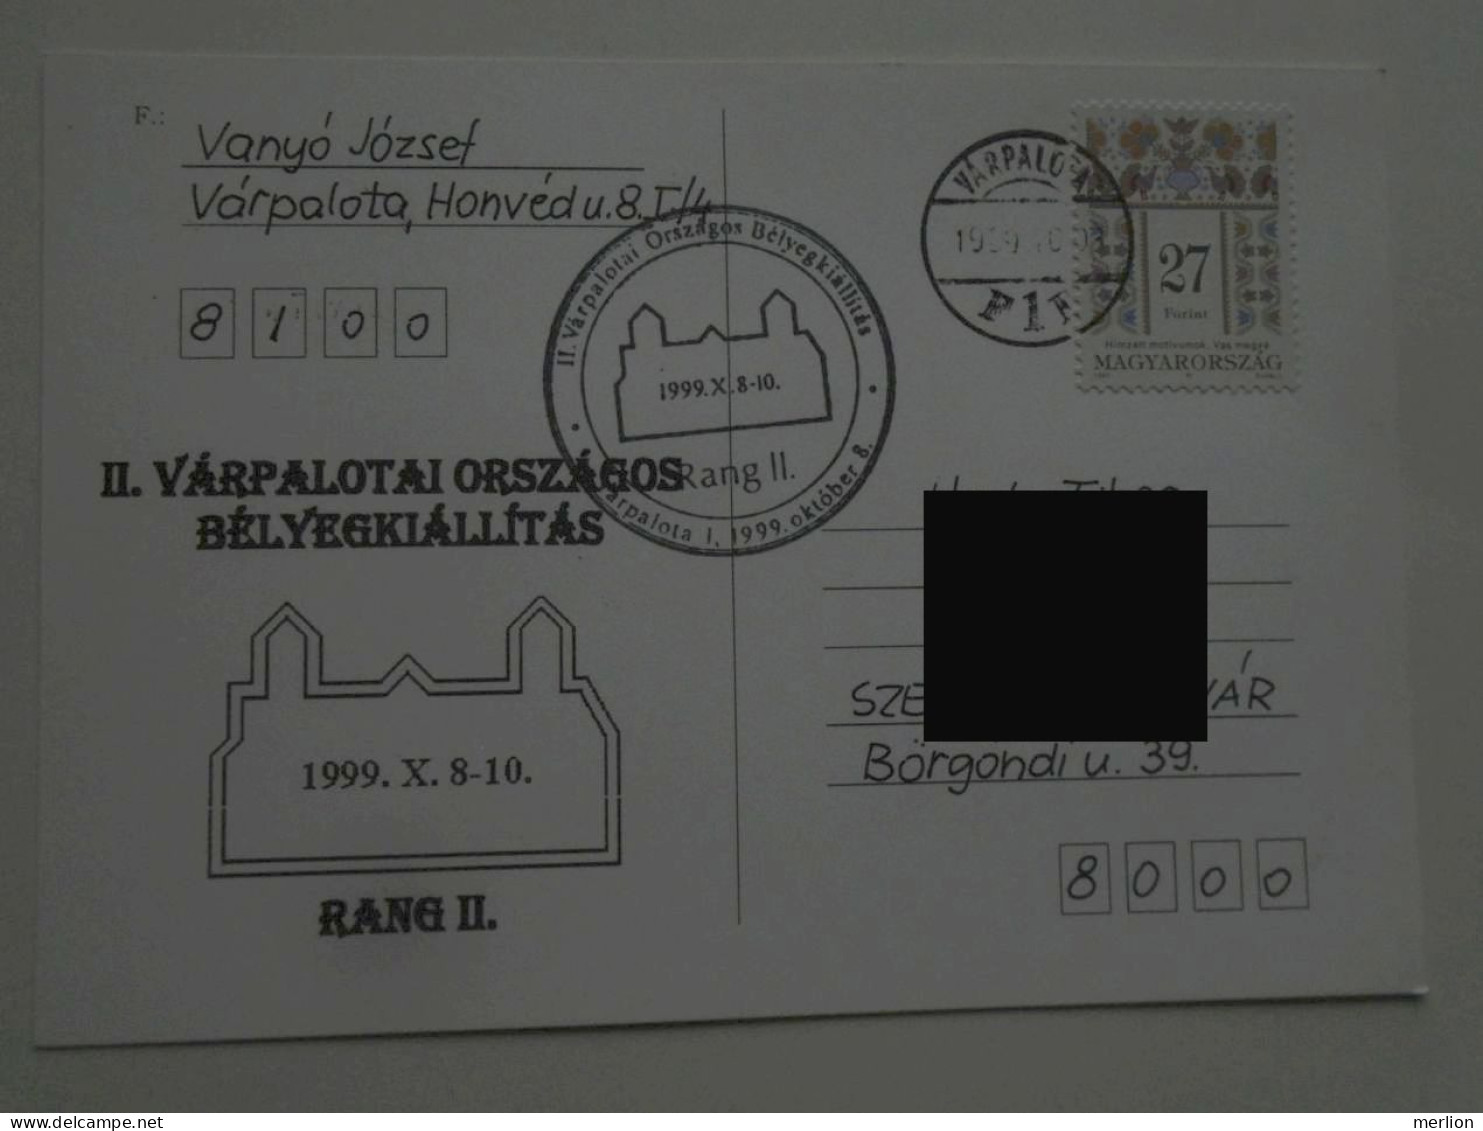 D201095  Hungary  Sopron  - Special Postmark -  Várpalota  1999   Országos Bélyegkiállítás  -Stamp Exhibition - Postmark Collection